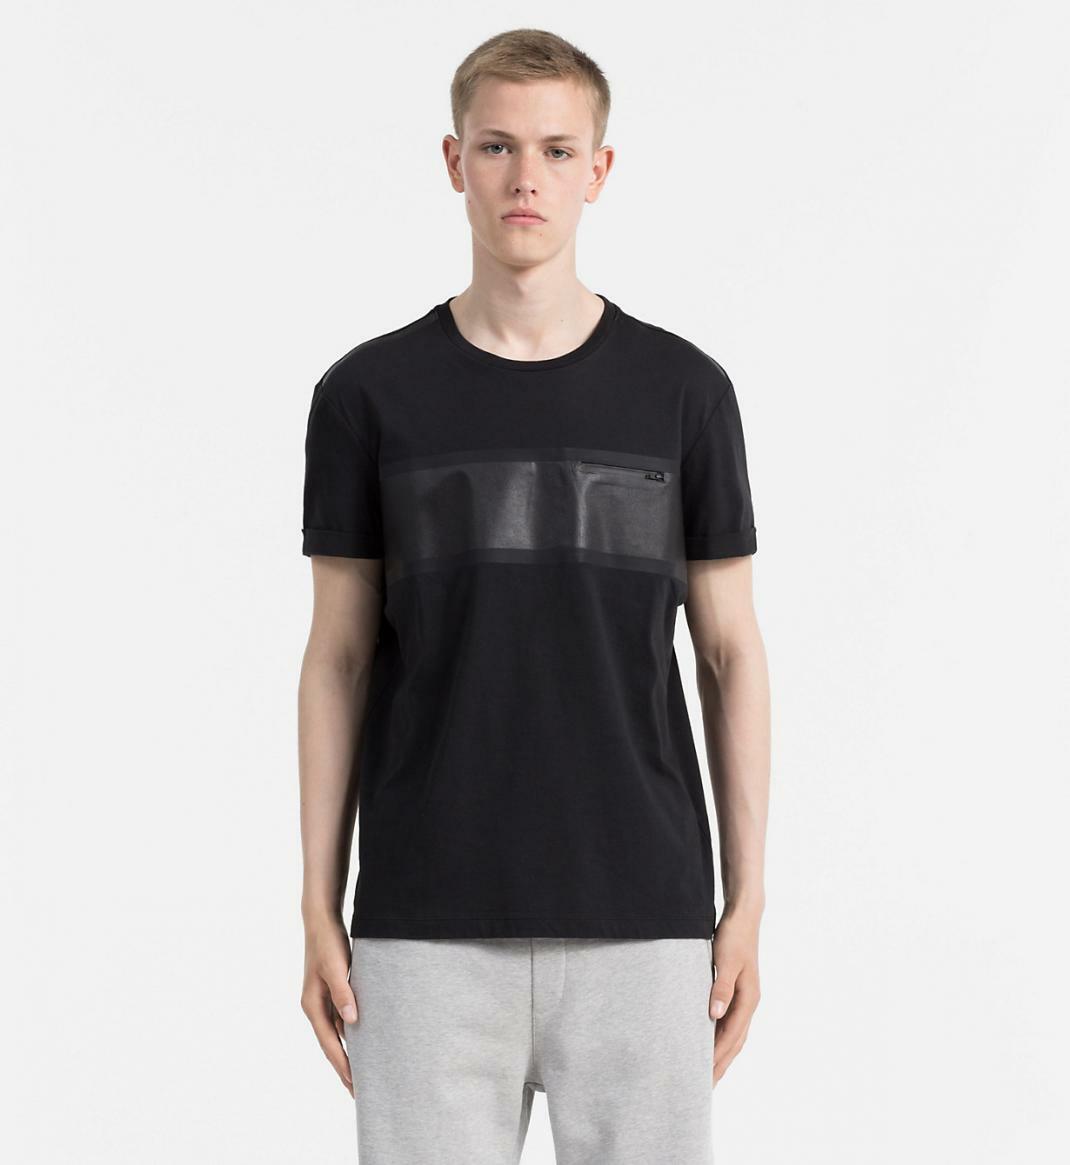 Calvin Klein pánské černé tričko - L (099)